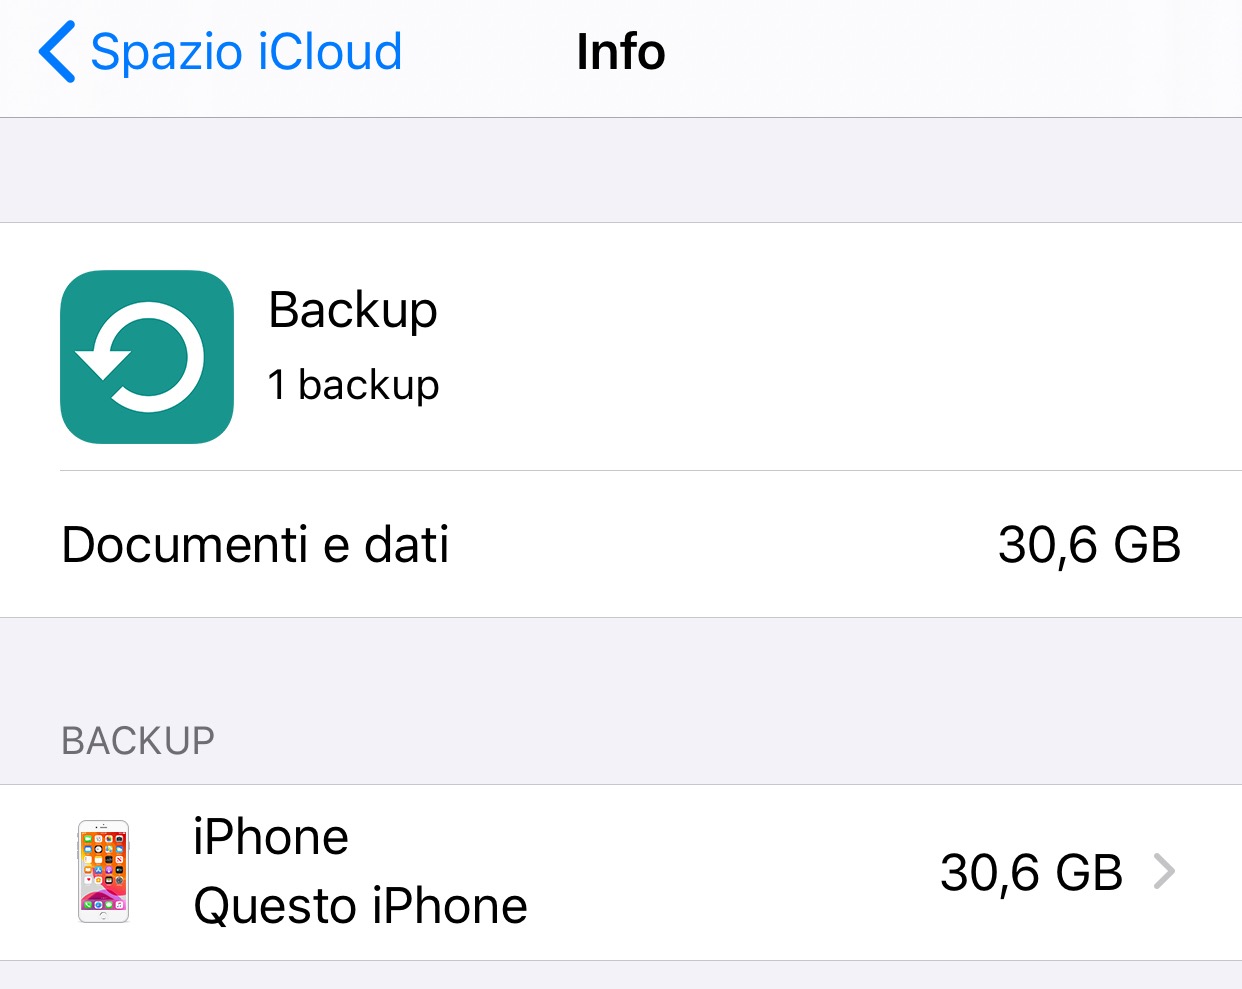 backup di iPhone con iCloud